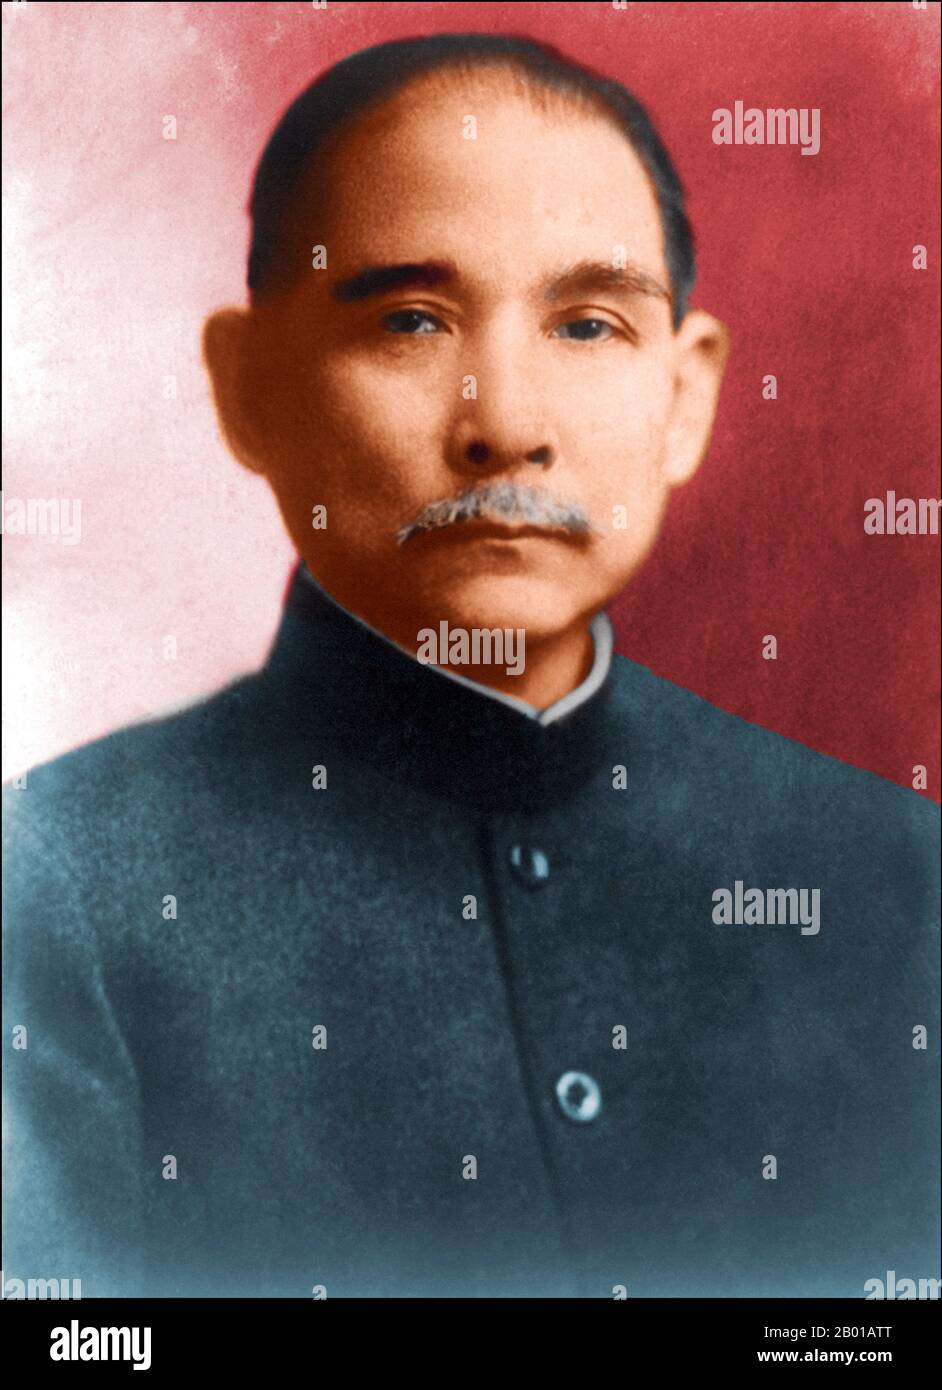 Sun Yat-sen war ein chinesischer revolutionärer und politischer Führer. Als der wichtigste Pionier des nationalistischen China wird Sun häufig als der Gründervater des republikanischen China bezeichnet. Sun spielte eine entscheidende Rolle beim Sturz der Qing-Dynastie, der letzten kaiserlichen Dynastie. Sun war der erste provisorische Präsident, als die Republik China (ROC) 1912 gegründet wurde und später die Chinesische Nationale Volkspartei oder Kuomintang (KMT) mitbegründete, wo er als erster Führer diente. Sun war eine einigende Figur im postimperialen China und wird von beiden Seiten der Taiwan-Straße verehrt. Stockfoto